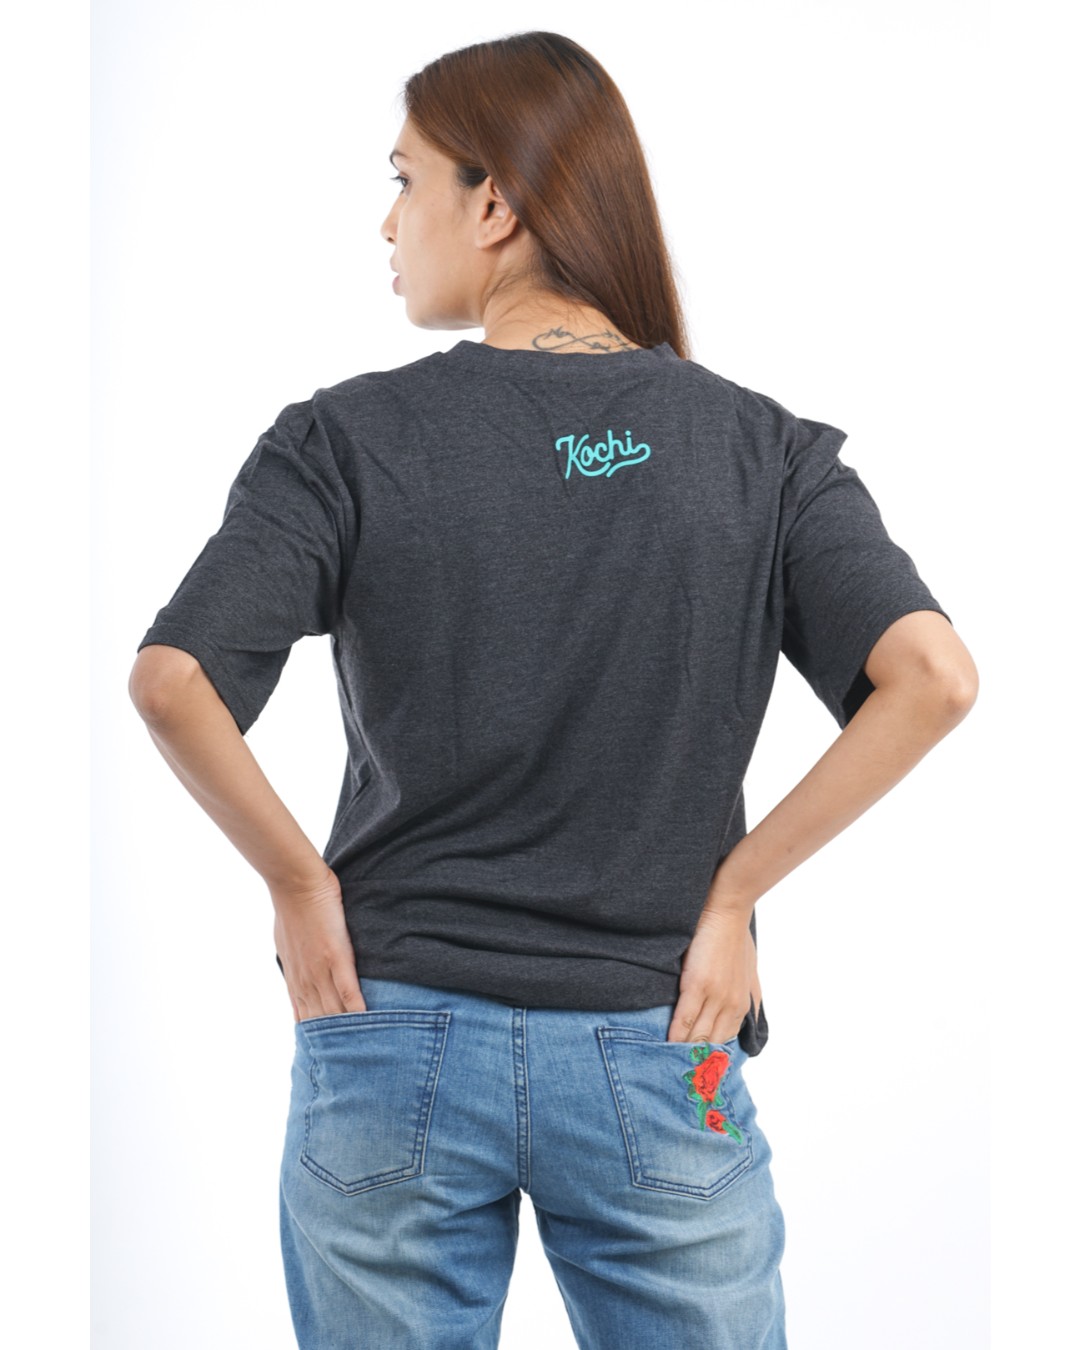 Shop Women's Kochi x3 T-shirt in Charcoal-Back